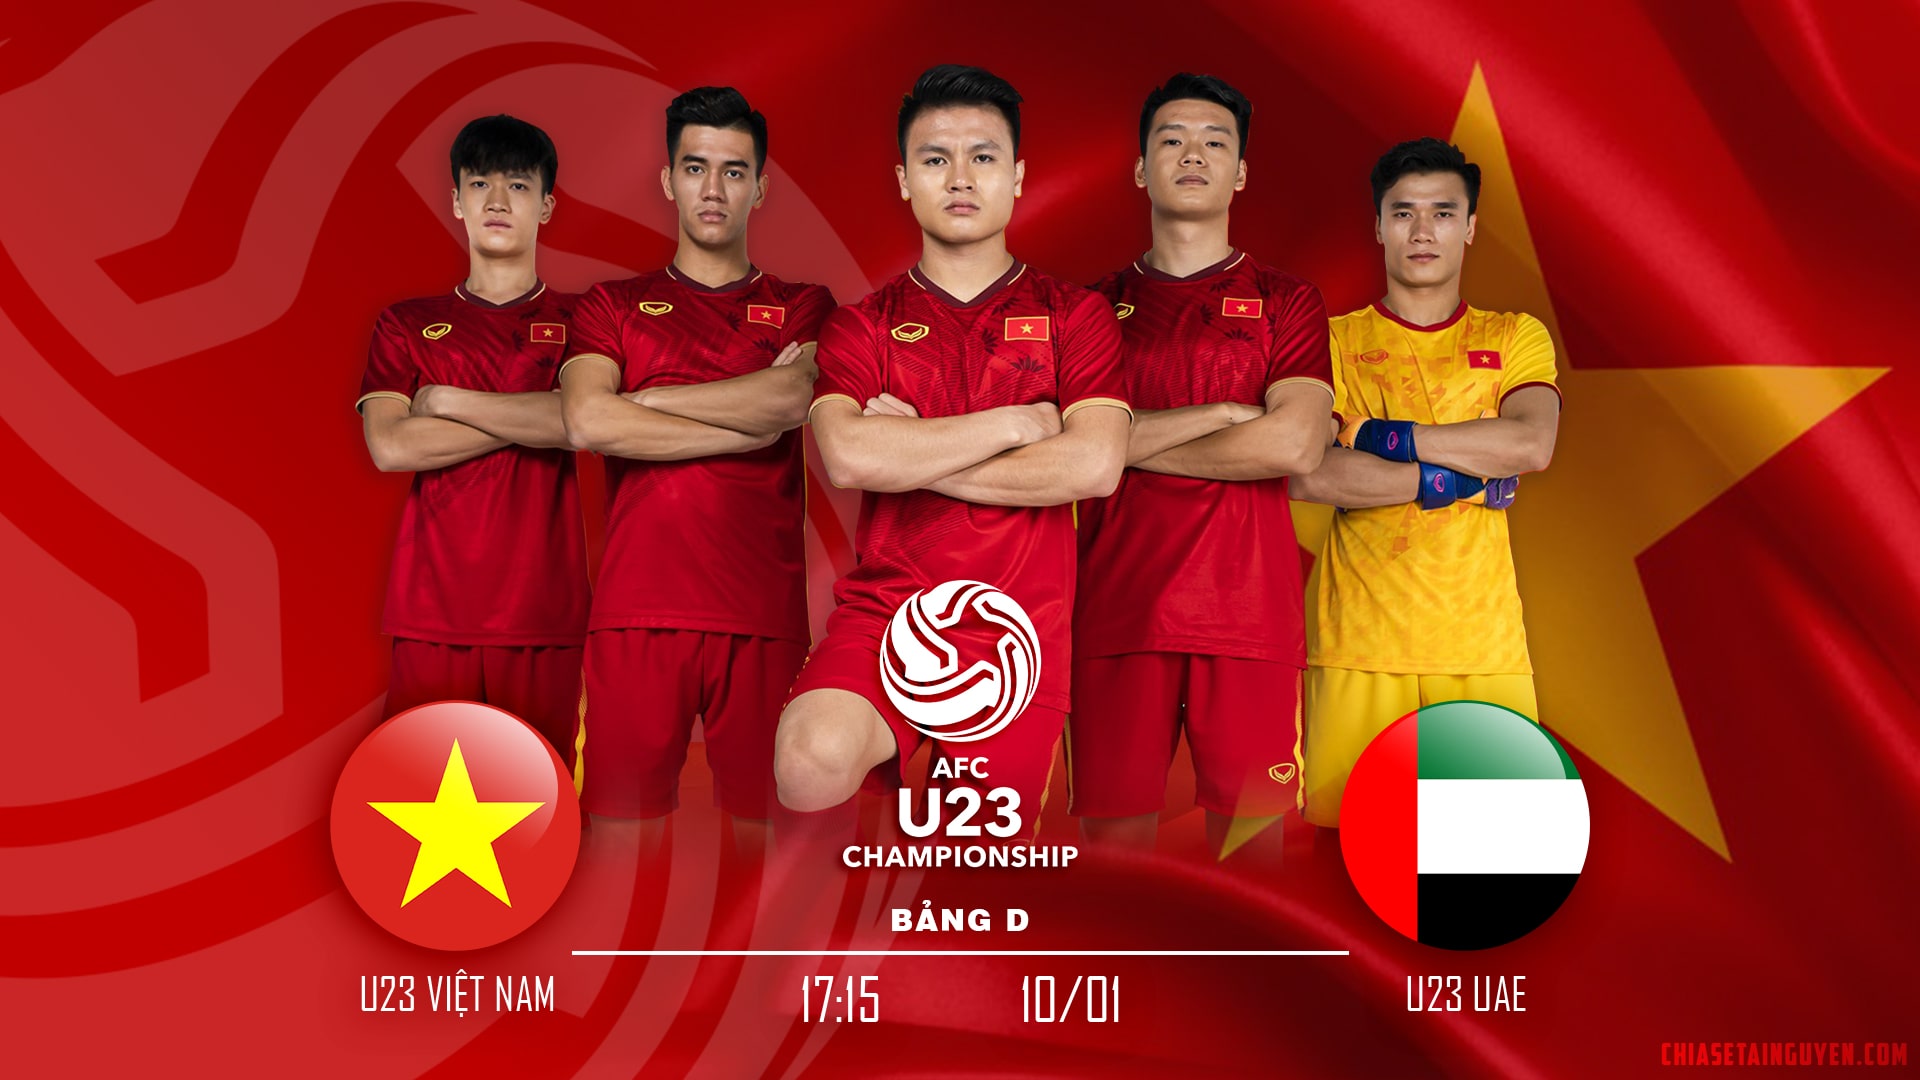 Nhìn lại những hình ảnh trong trận U23 Việt Nam-U23 Đài Bắc Trung Hoa |  Vietnam+ (VietnamPlus)